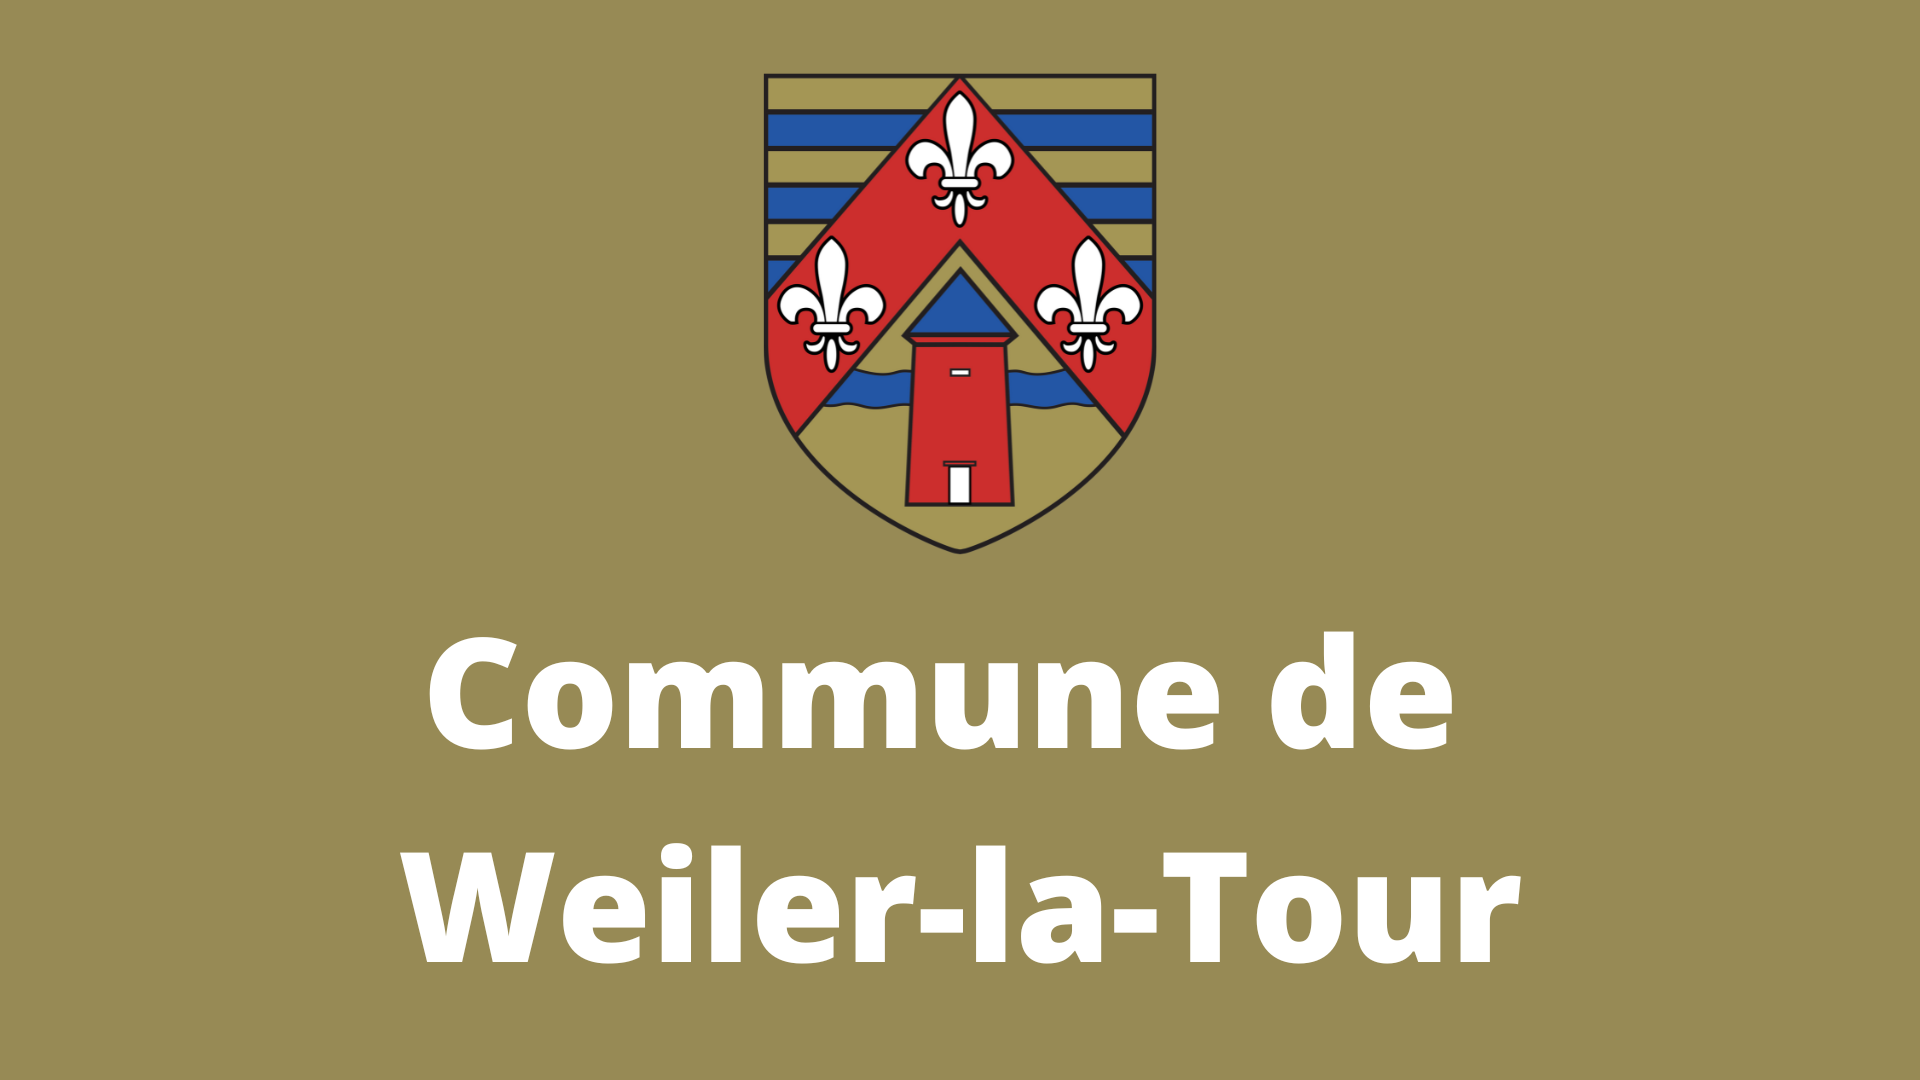 (c) Weiler-la-tour.lu